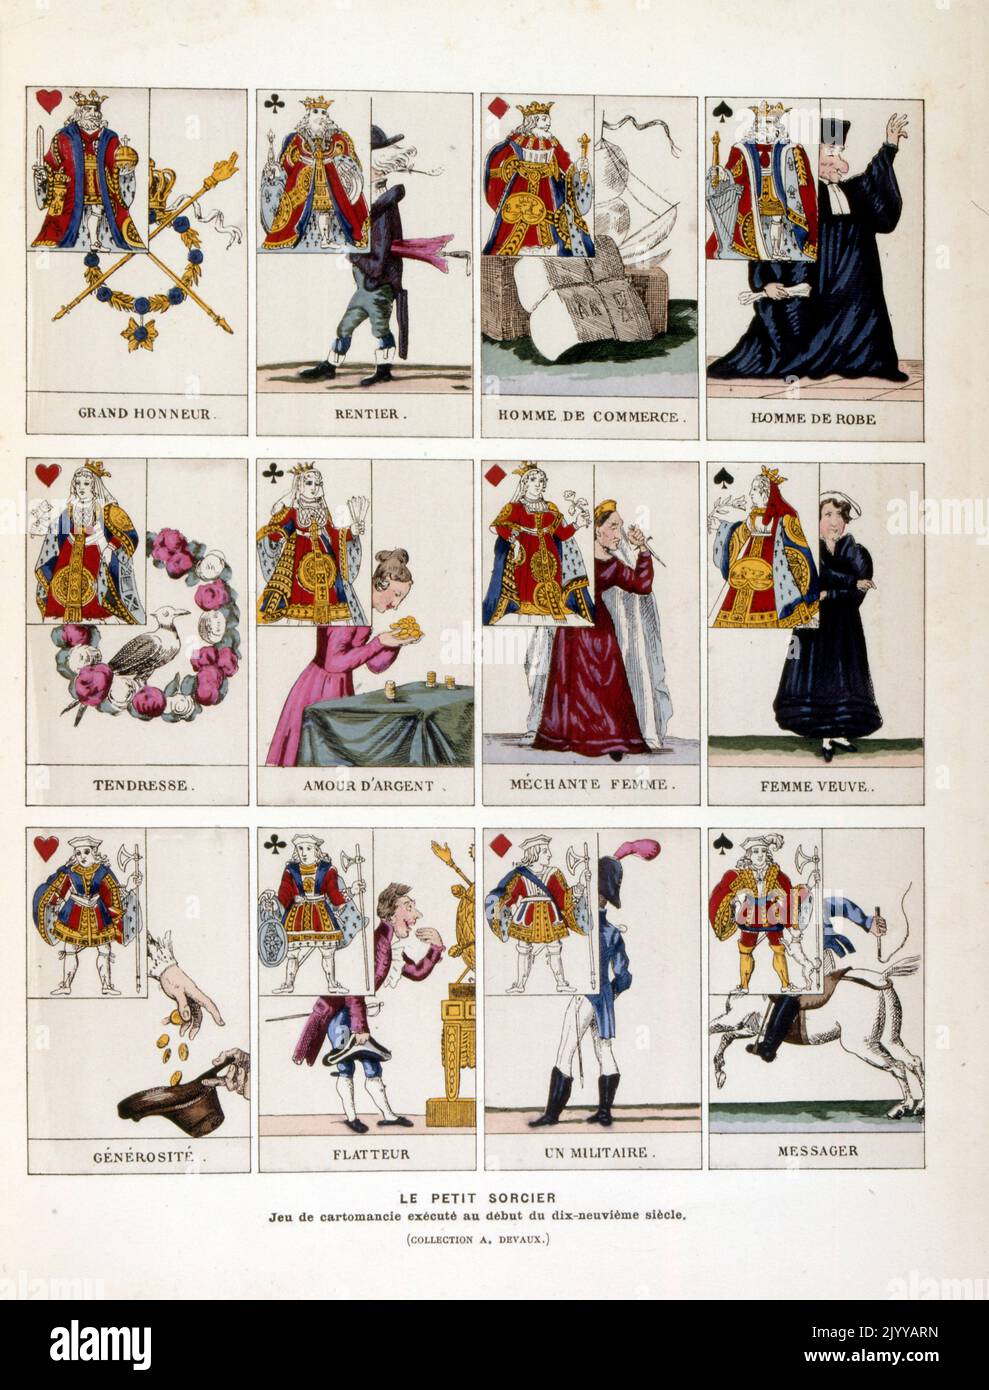 Farbige Abbildung eines Kartenspiels mit dem Namen „die kleine Hexe“ aus einem magischen Kartenspiel, das zu Beginn des 19.. Jahrhunderts gespielt wurde. Stockfoto